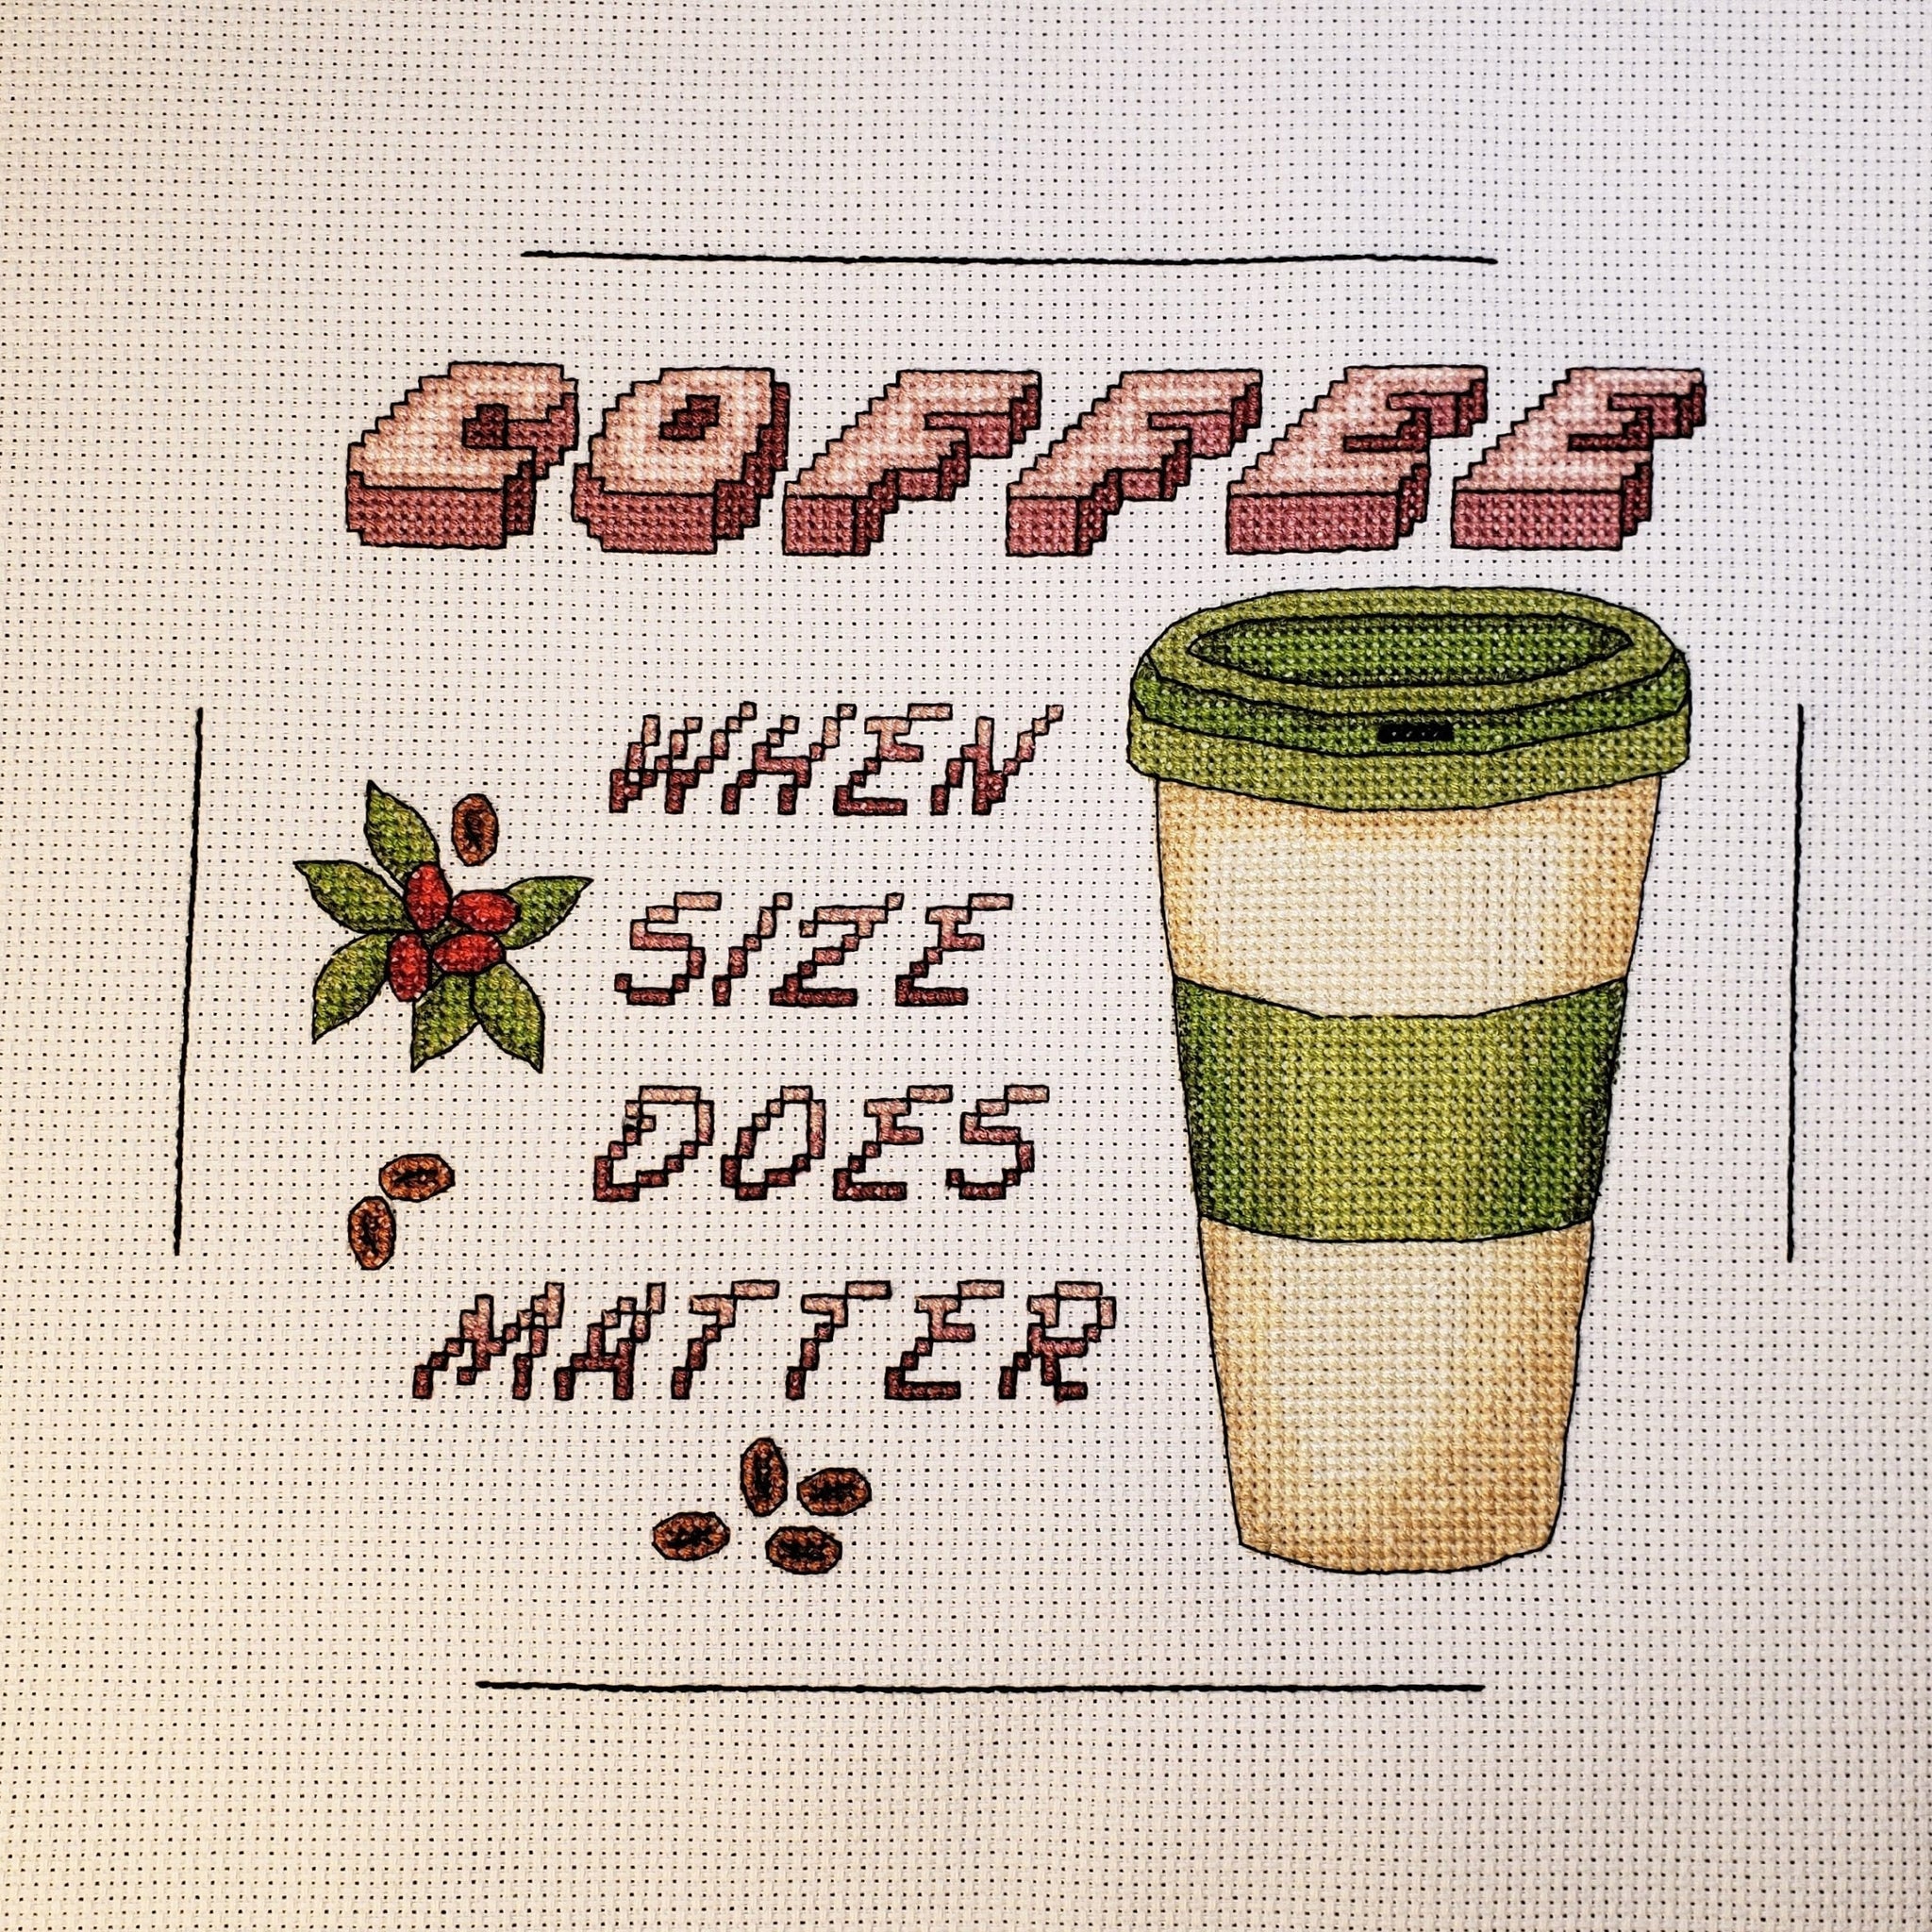 Coffee Size Matters - Cross Stitch Pattern